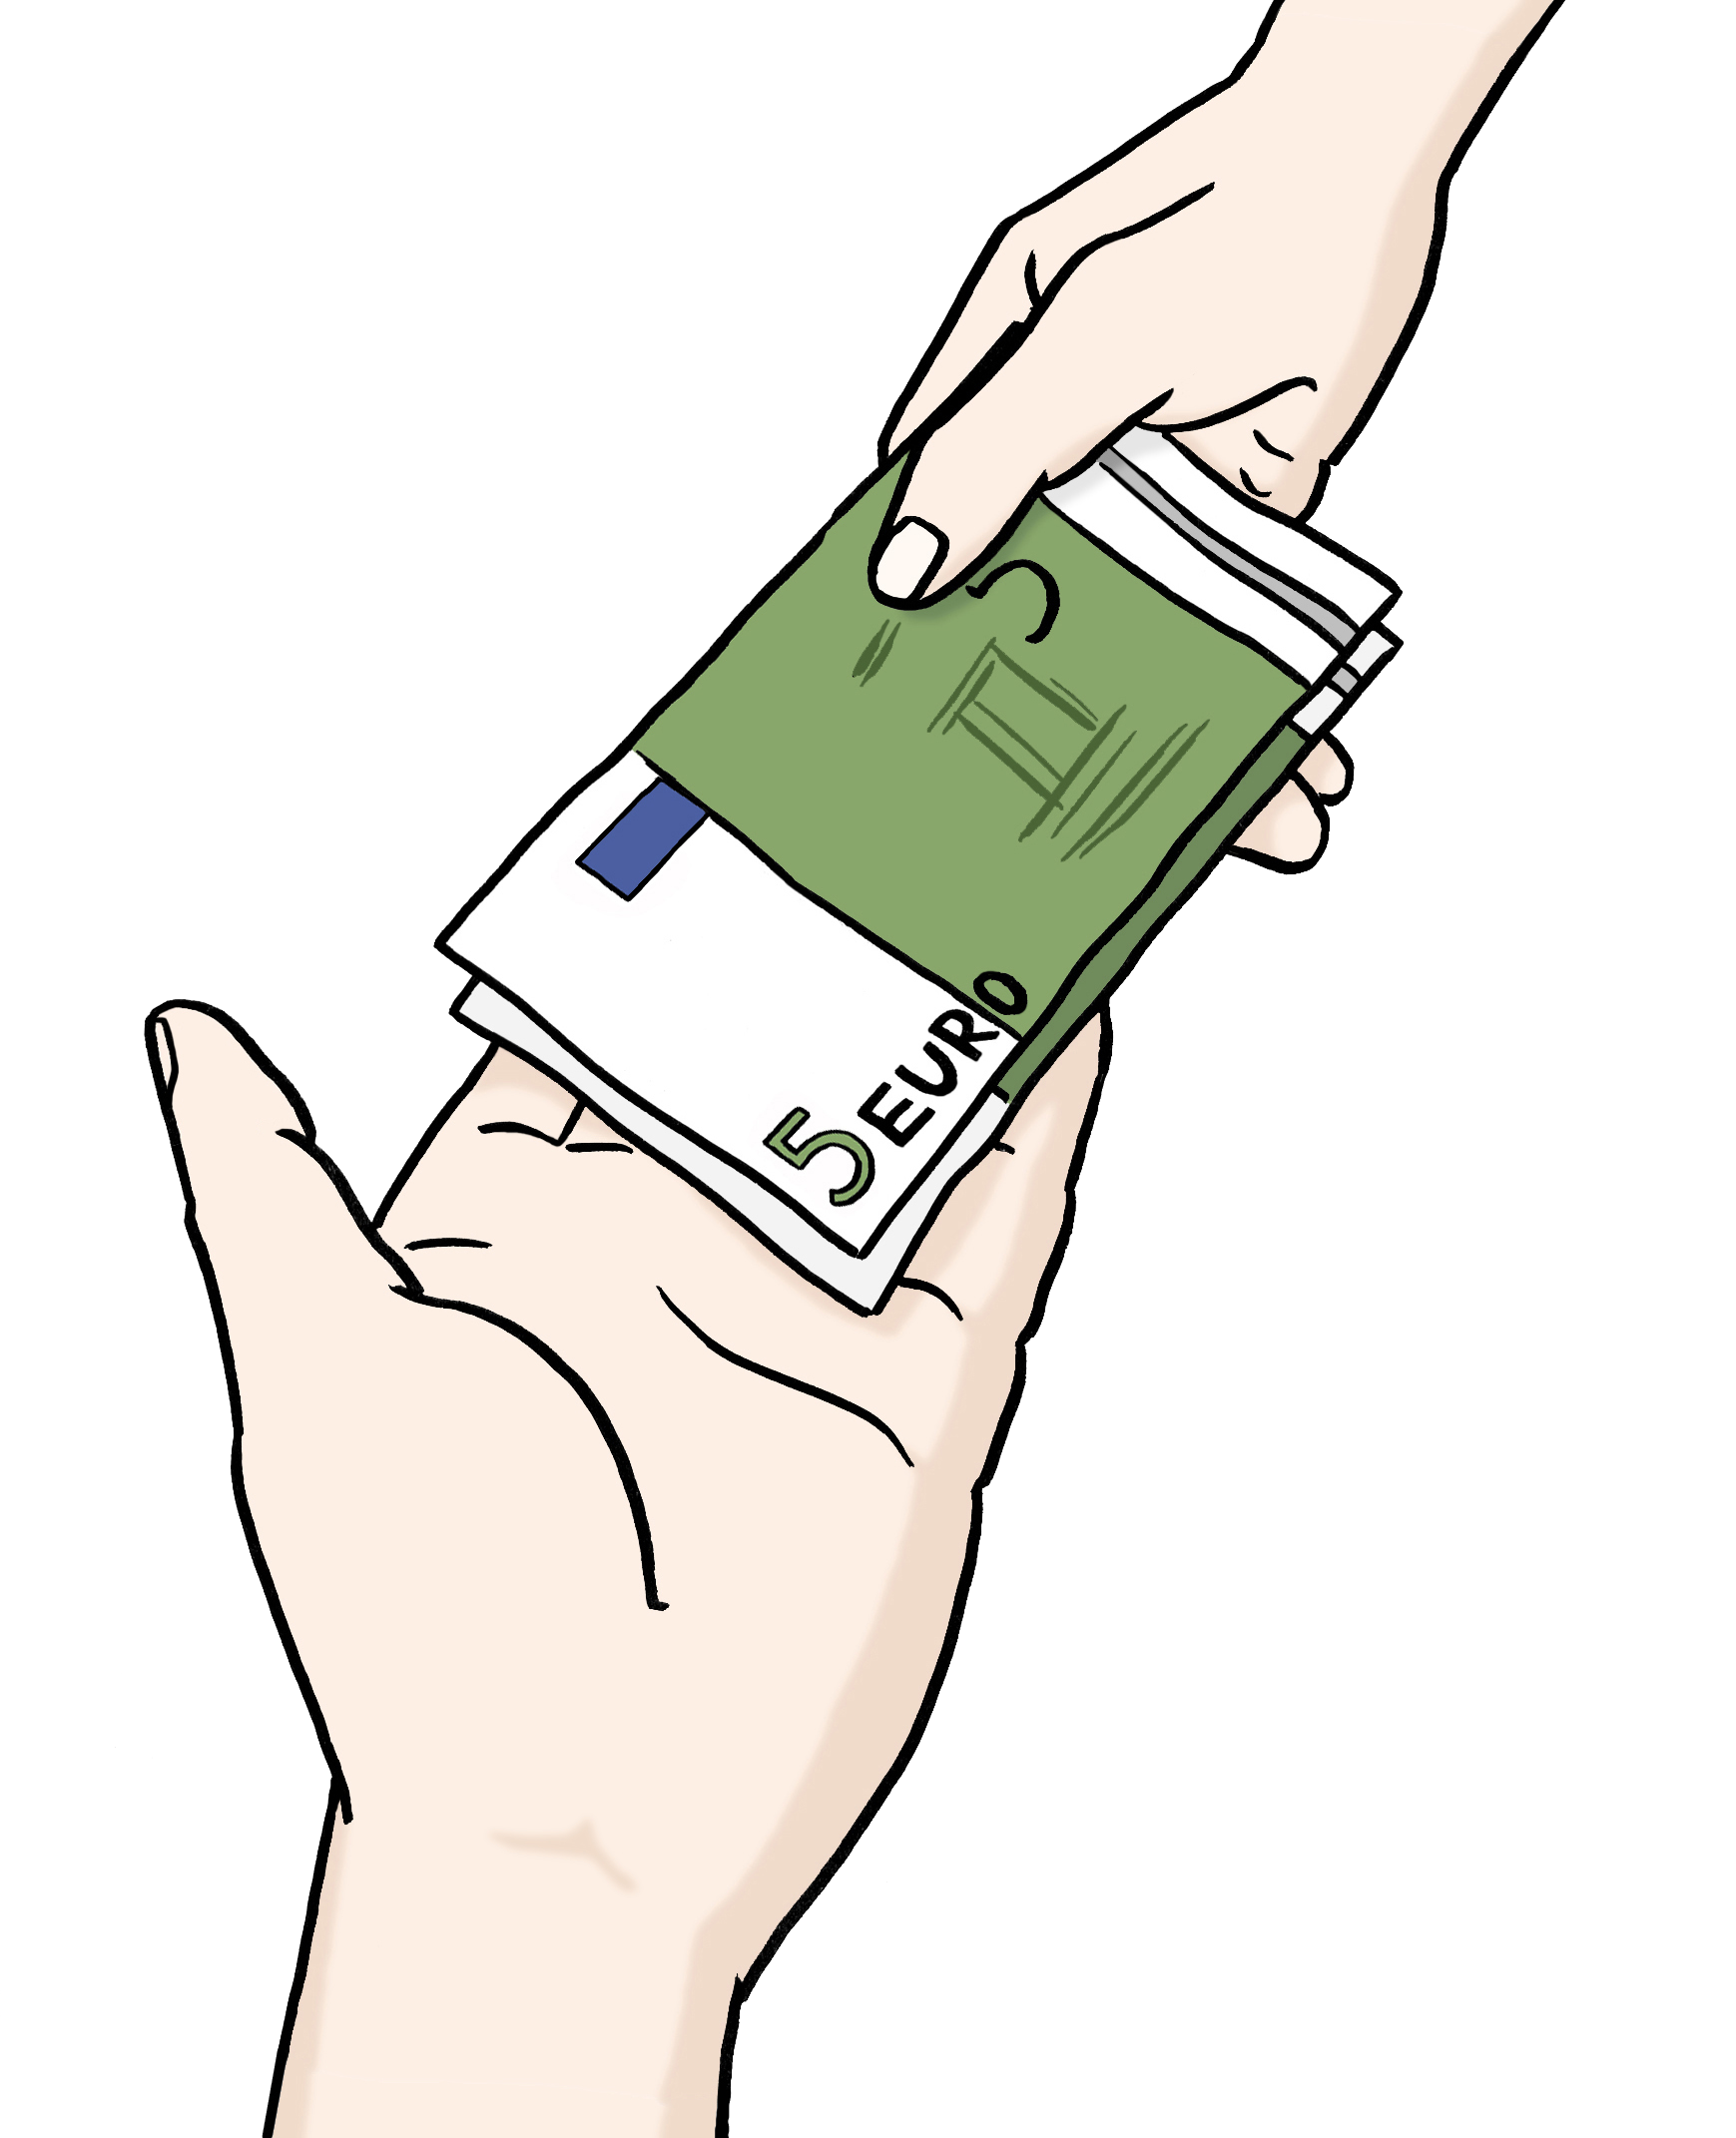 Leichte Sprache Bild: eine Hand gibt einer anderen Hand mehrere Geldscheine